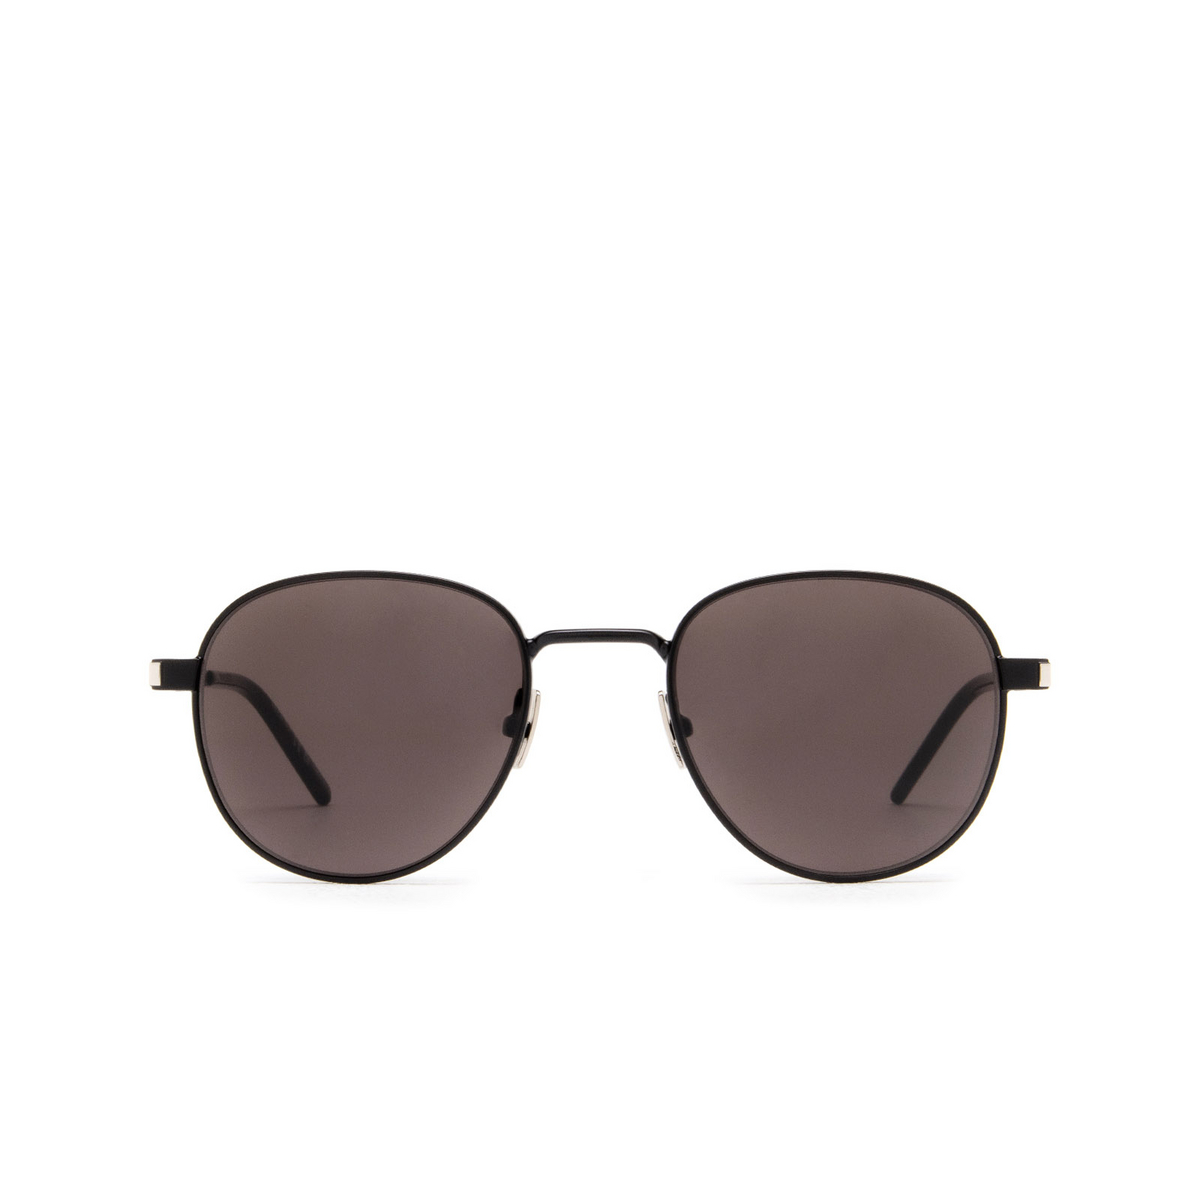 Saint Laurent SL 555 Sunglasses 001 Black - front view